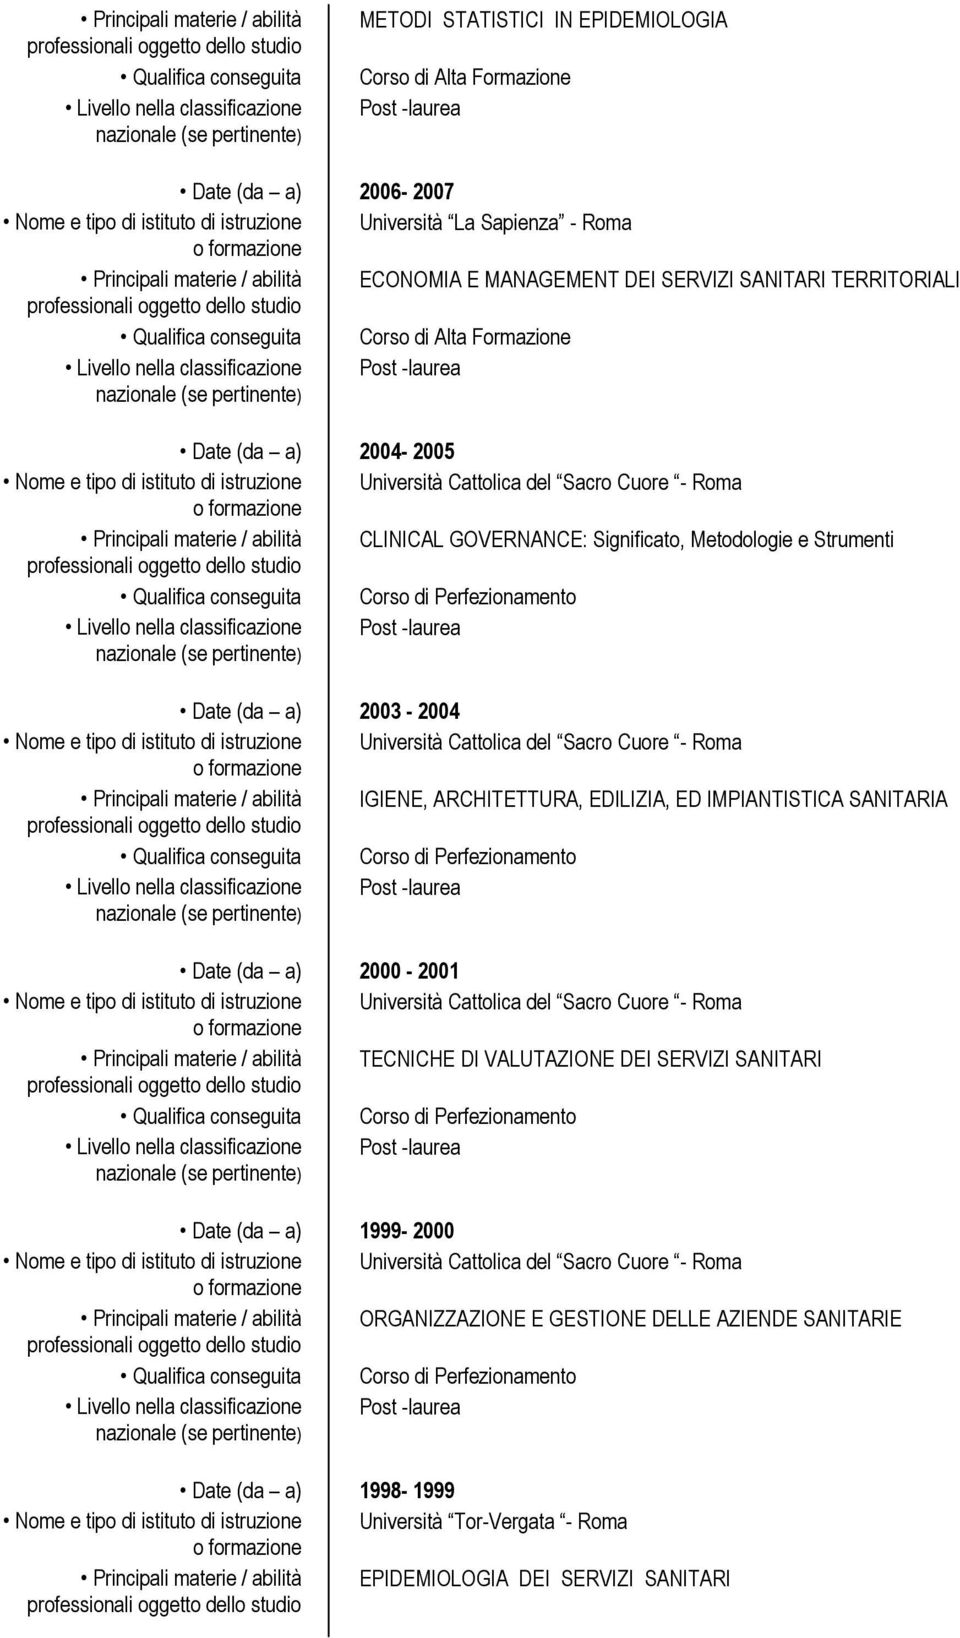 Principali materie / abilità CLINICAL GOVERNANCE: Significato, Metodologie e Strumenti Date (da a) 2003-2004 Principali materie / abilità IGIENE, ARCHITETTURA, EDILIZIA, ED IMPIANTISTICA SANITARIA